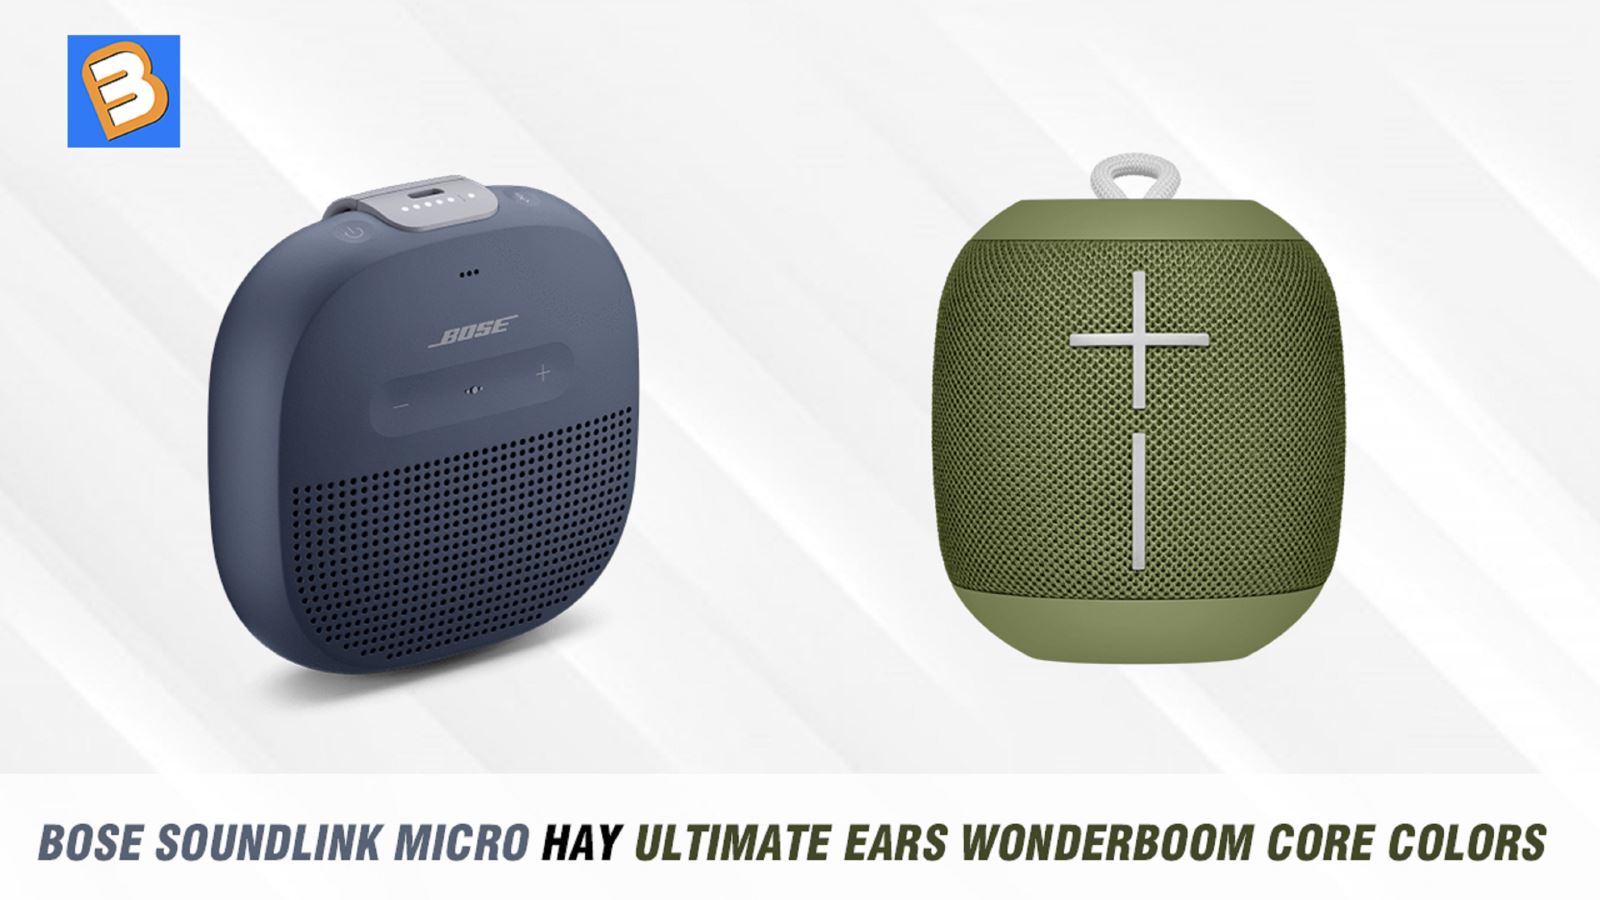 Bose Soundlink Micro hay Ultimate Ears Wonderboom Core colors